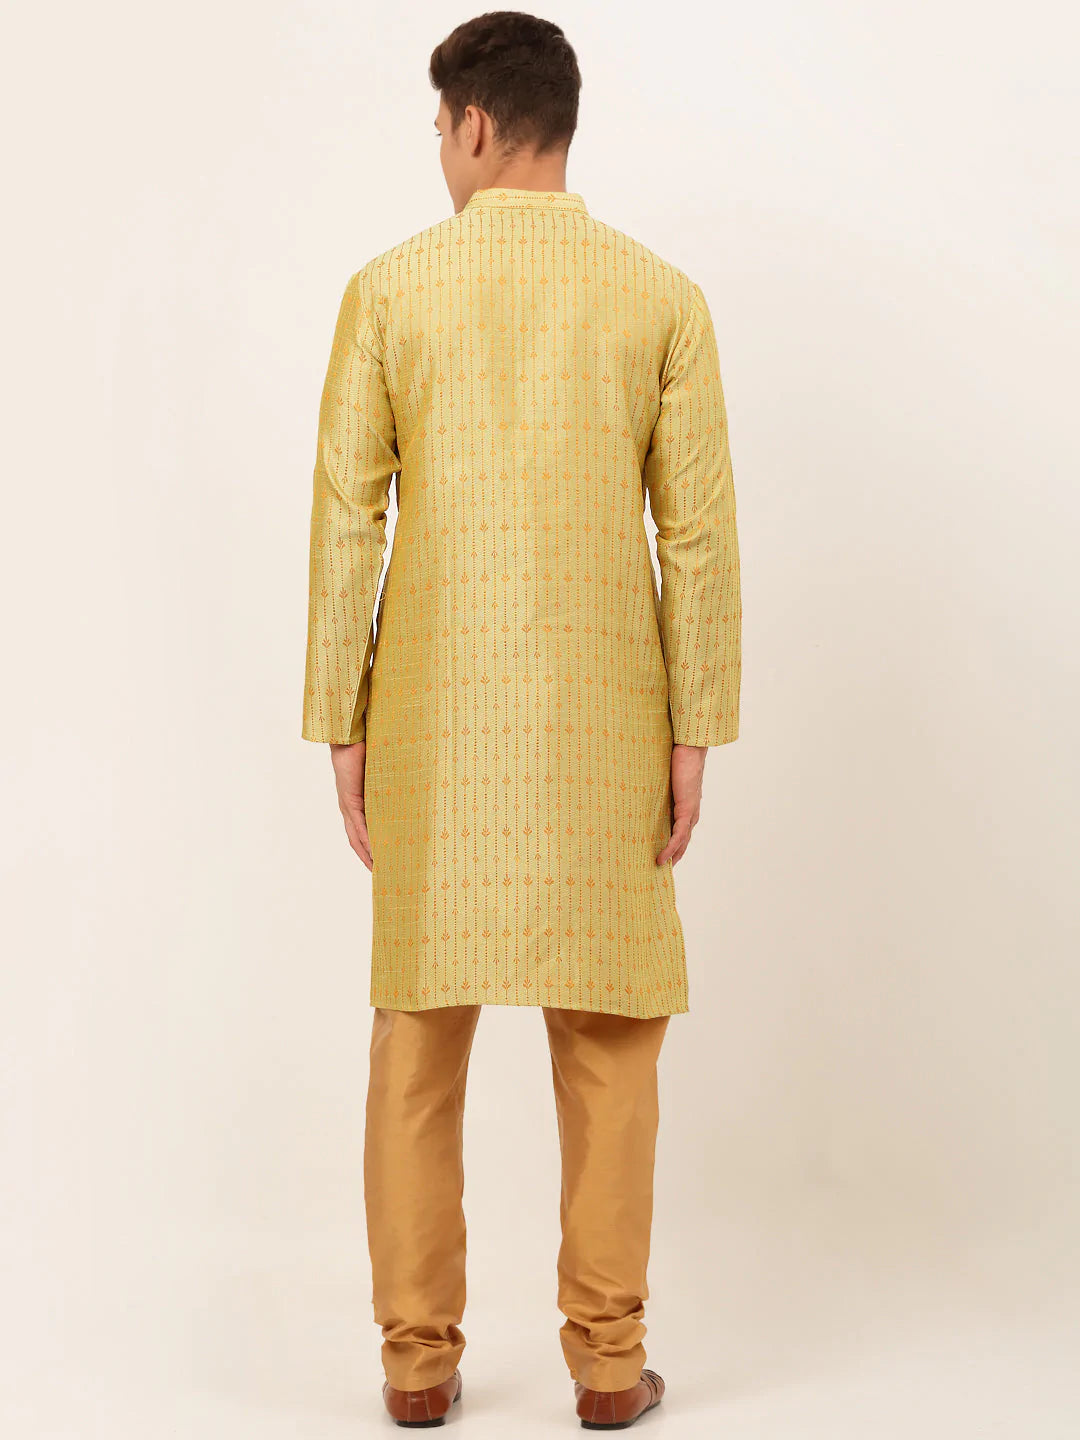 Jompers Men's Yellow Embroidered Kurta Payjama Sets ( JOKP 676 Yellow )